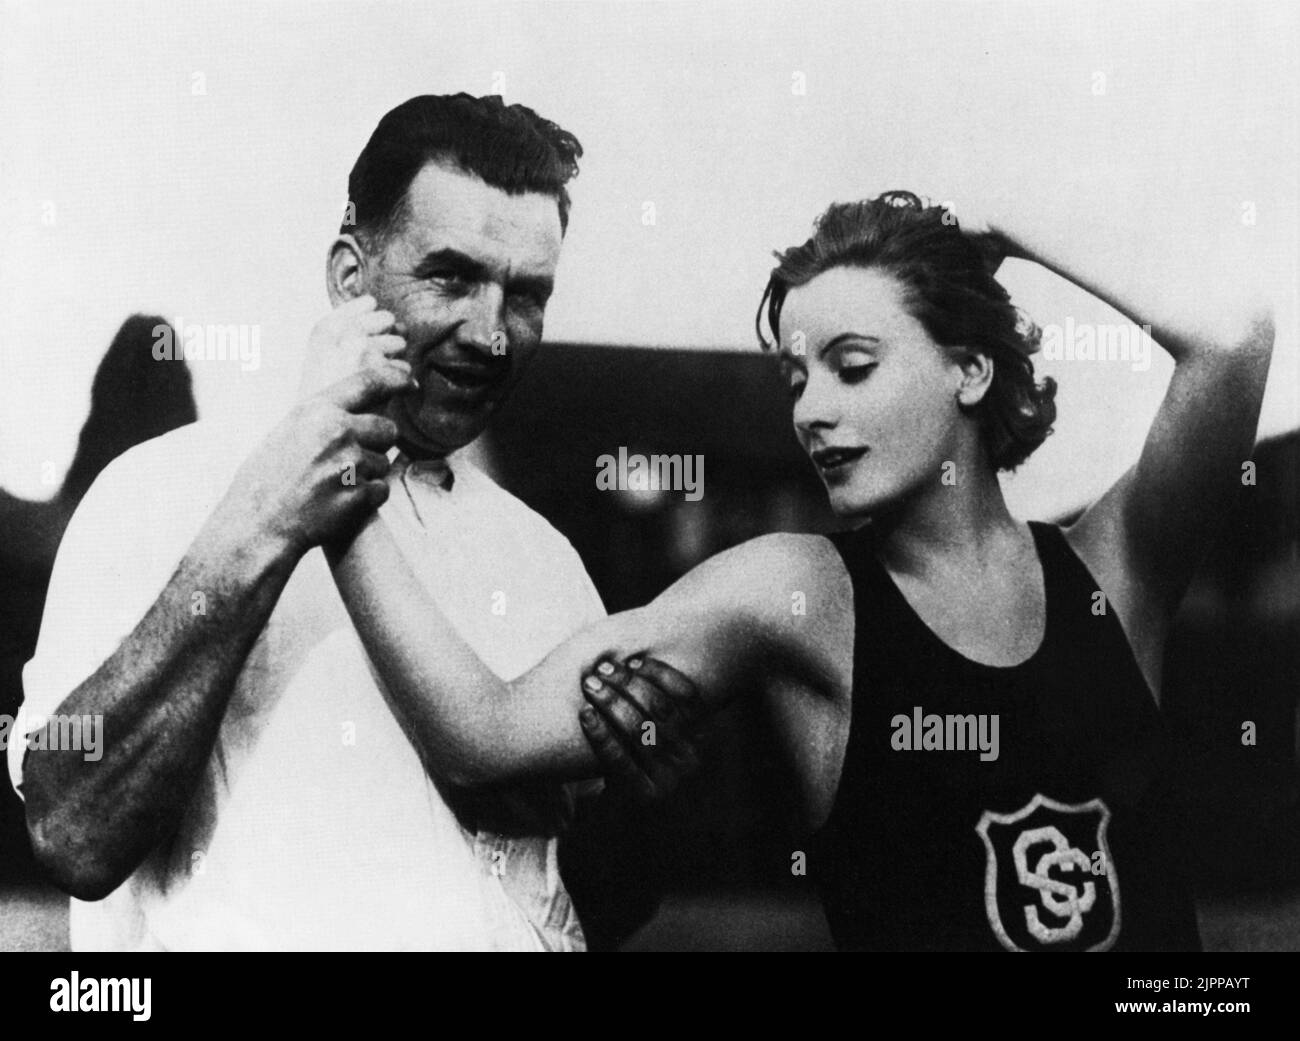 1925 , USA : The  movie actress  GRETA GARBO ( 1905 - 1990 ) in a pubblicity photo with the athletic theacher of University of Southern California   - MOVIE - CINEMA - portrait - ritratto  - muscoli - muscles - biceps - bicipiti - canottiera - braccio - arm - fitness   ----  Archivio GBB Stock Photo